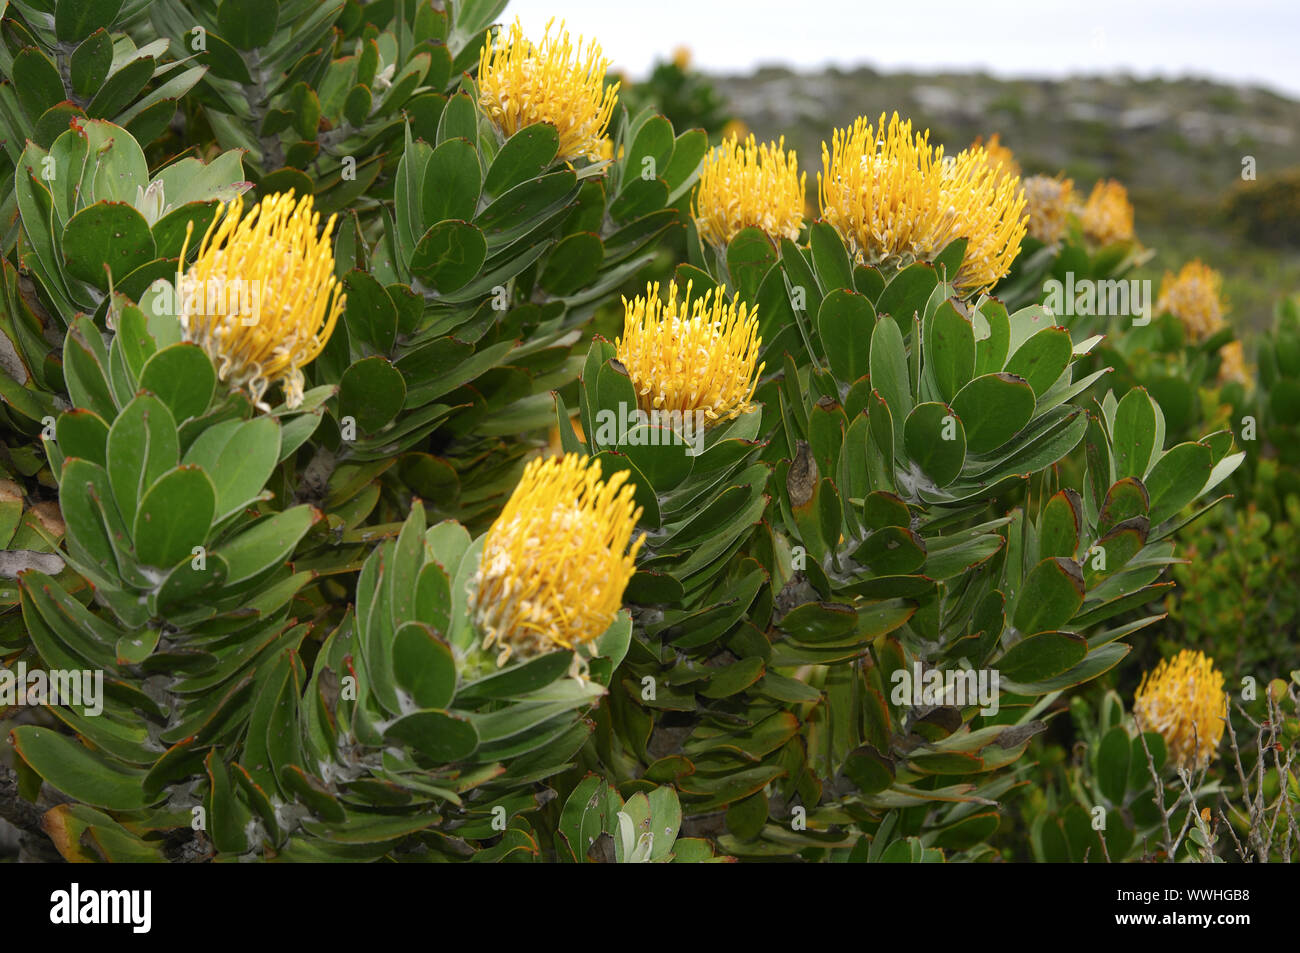 Sugar bush in bloom, Protea Stock Photo